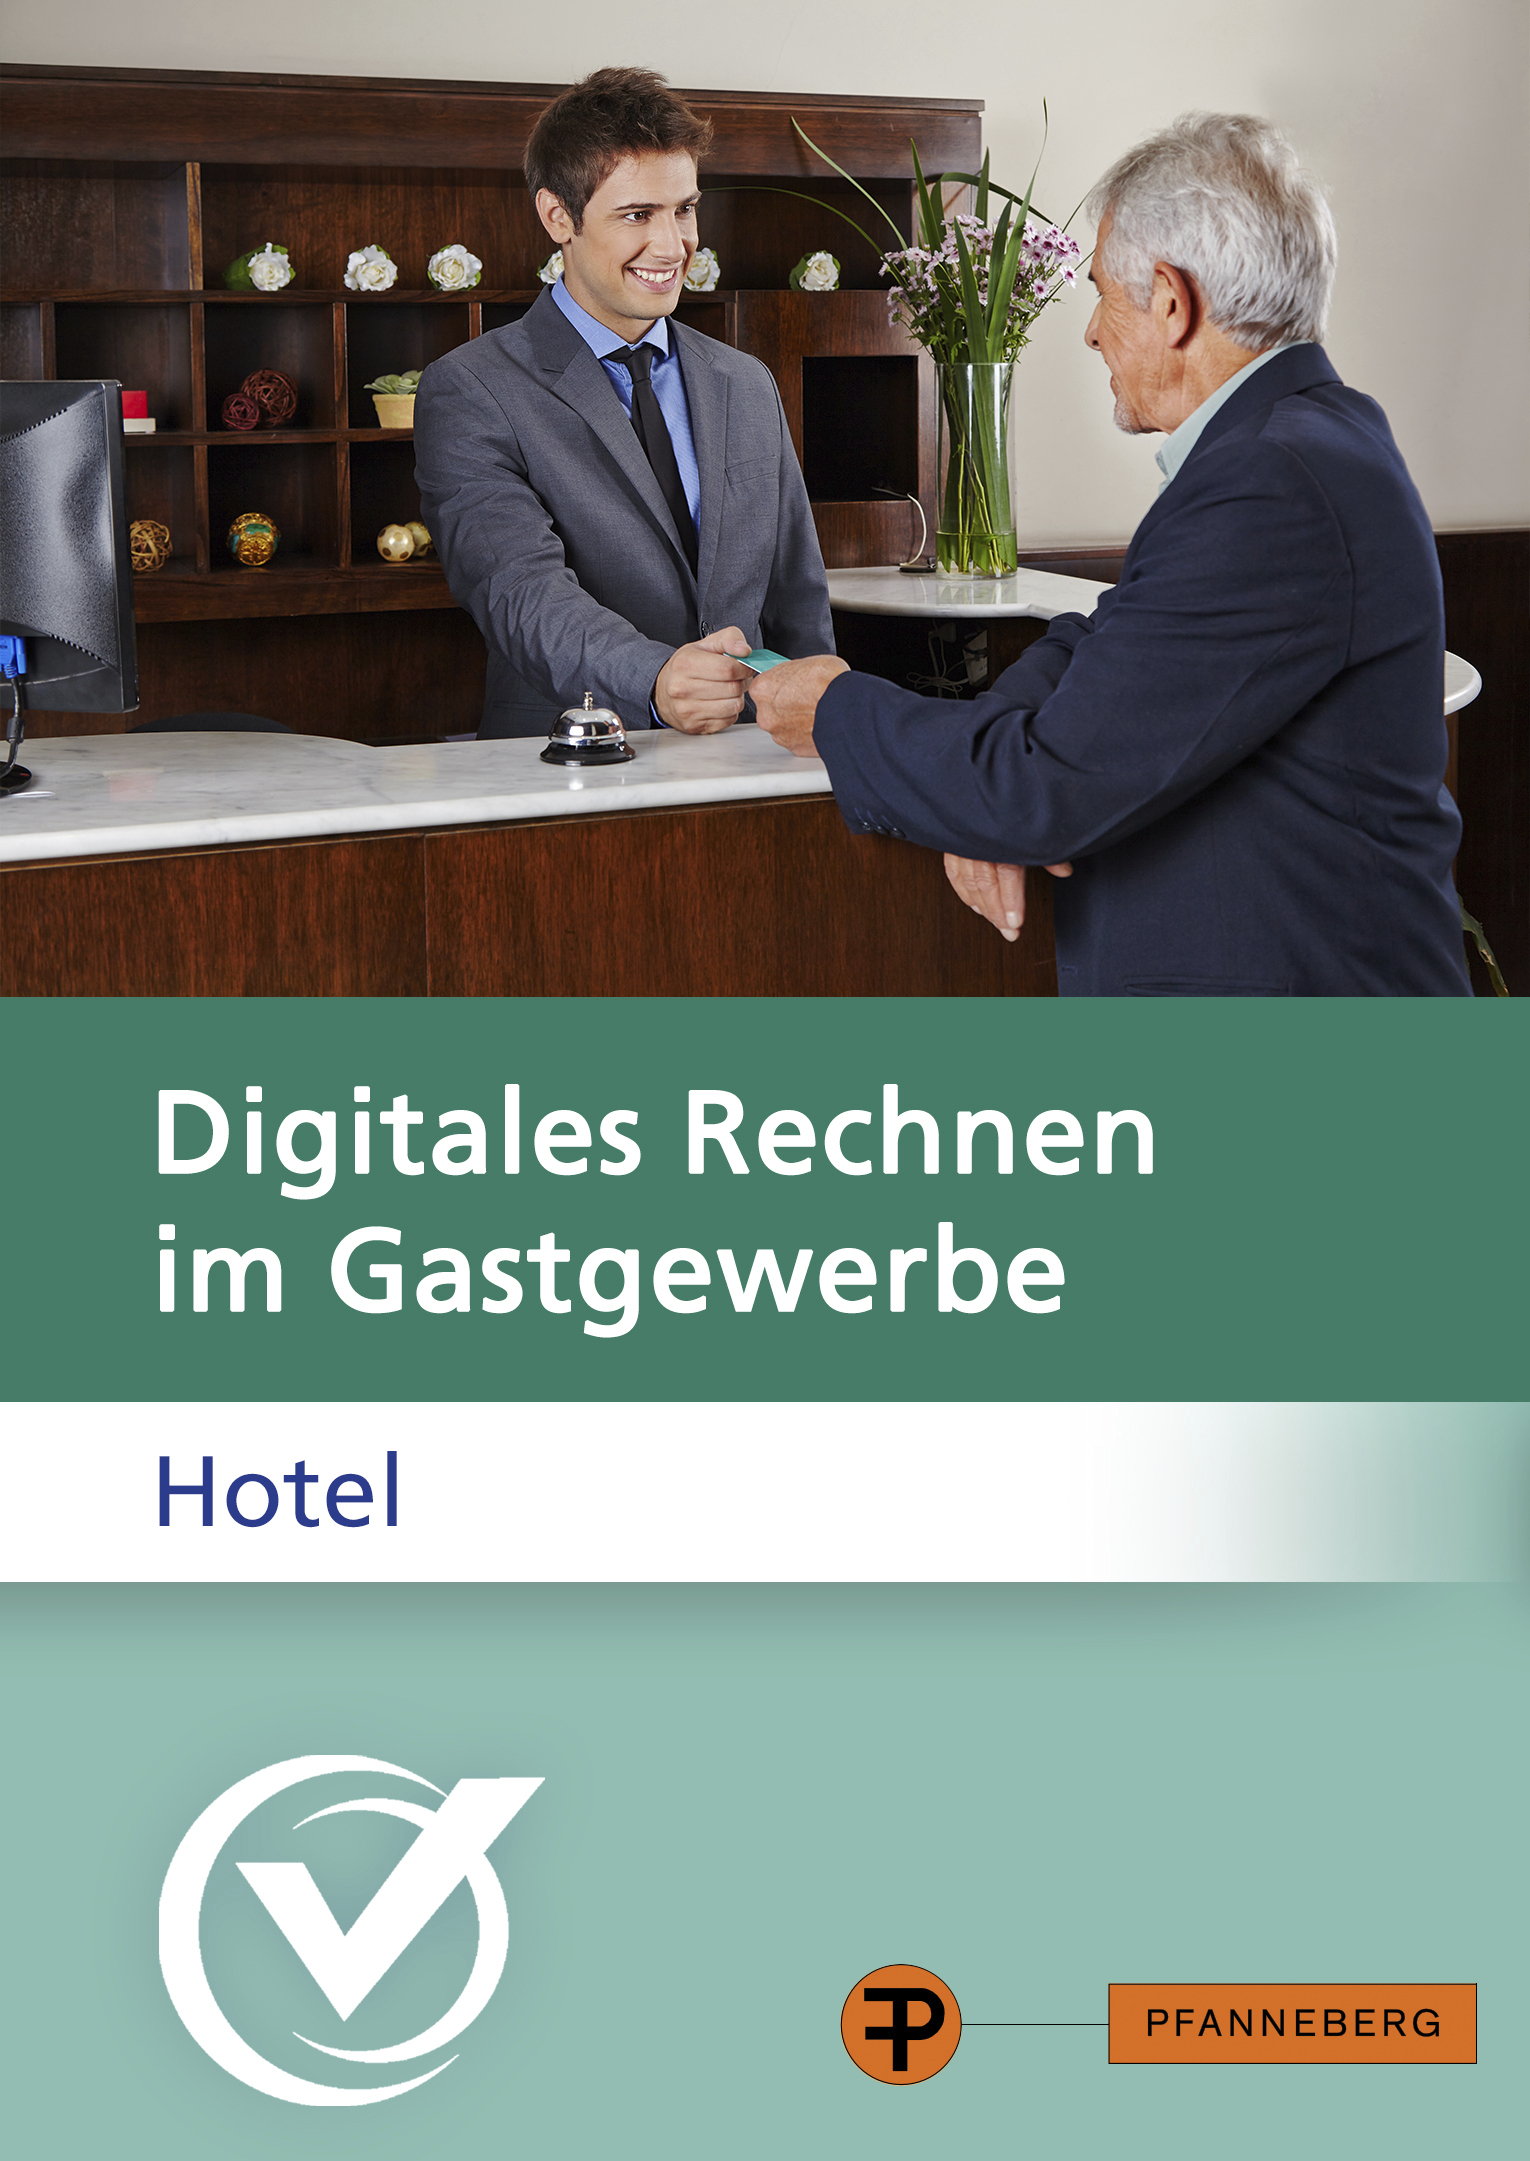 Digitales Rechnen im Gastgewerbe - Hotel